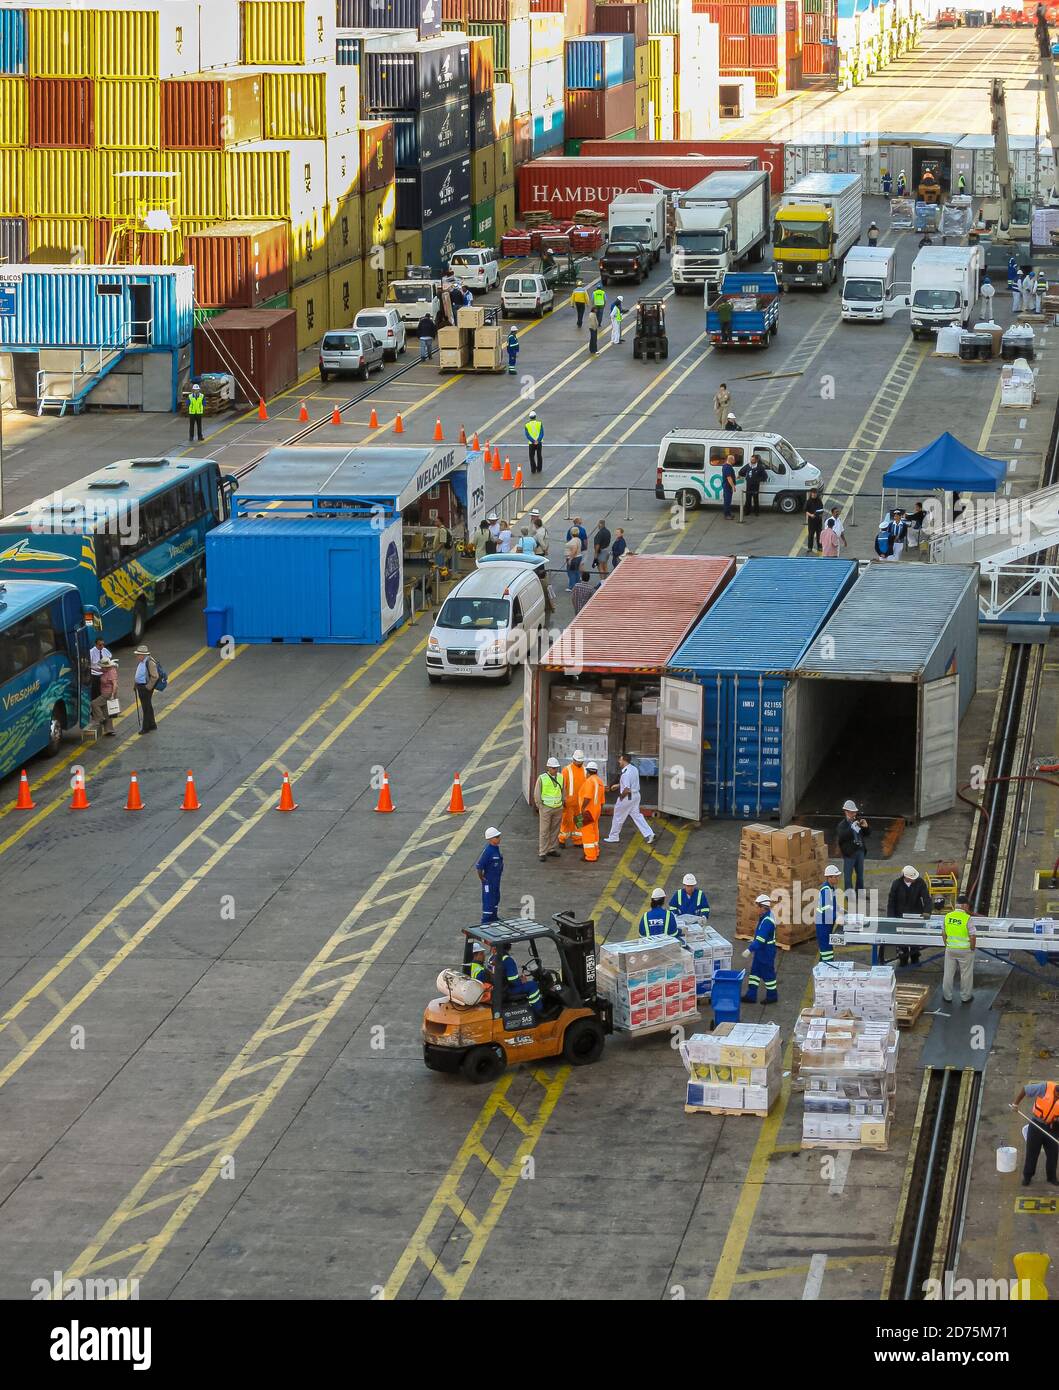 Valparaiso, Chili - 8 décembre 2008 : contrôle intensif du contenu des conteneurs et du chargement sur le shiip au port. Camions et piles de conteneurs en dif Banque D'Images